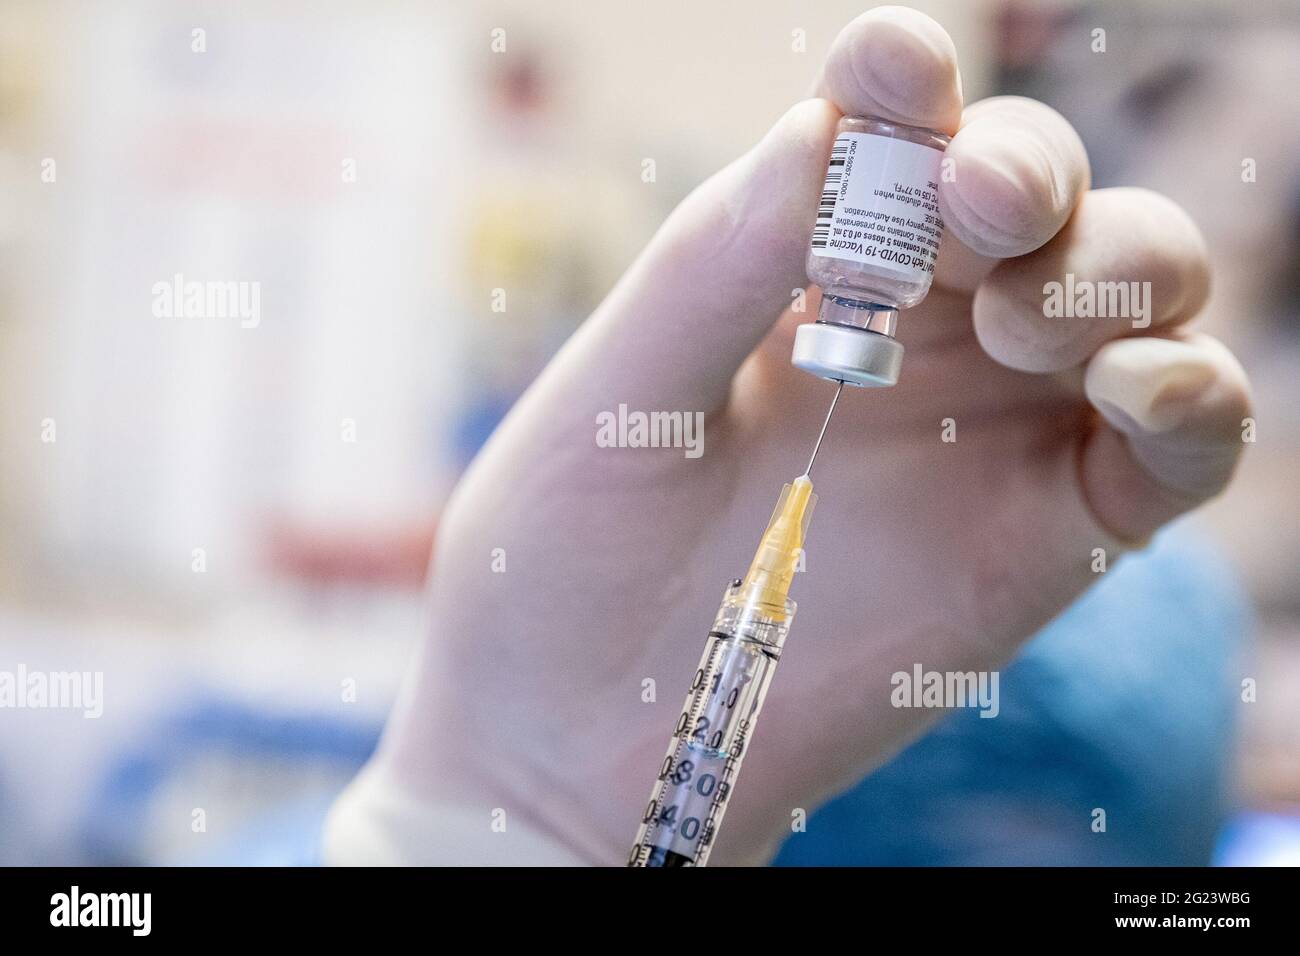 Mailand - Covid-19-Impfstoff im Krankenhaus von San Rafaele. Vorbereitung und Verdünnung von Impfstofffläschchen. Impfungen für Ärzte und Gesundheitspersonal (Mailand Stockfoto